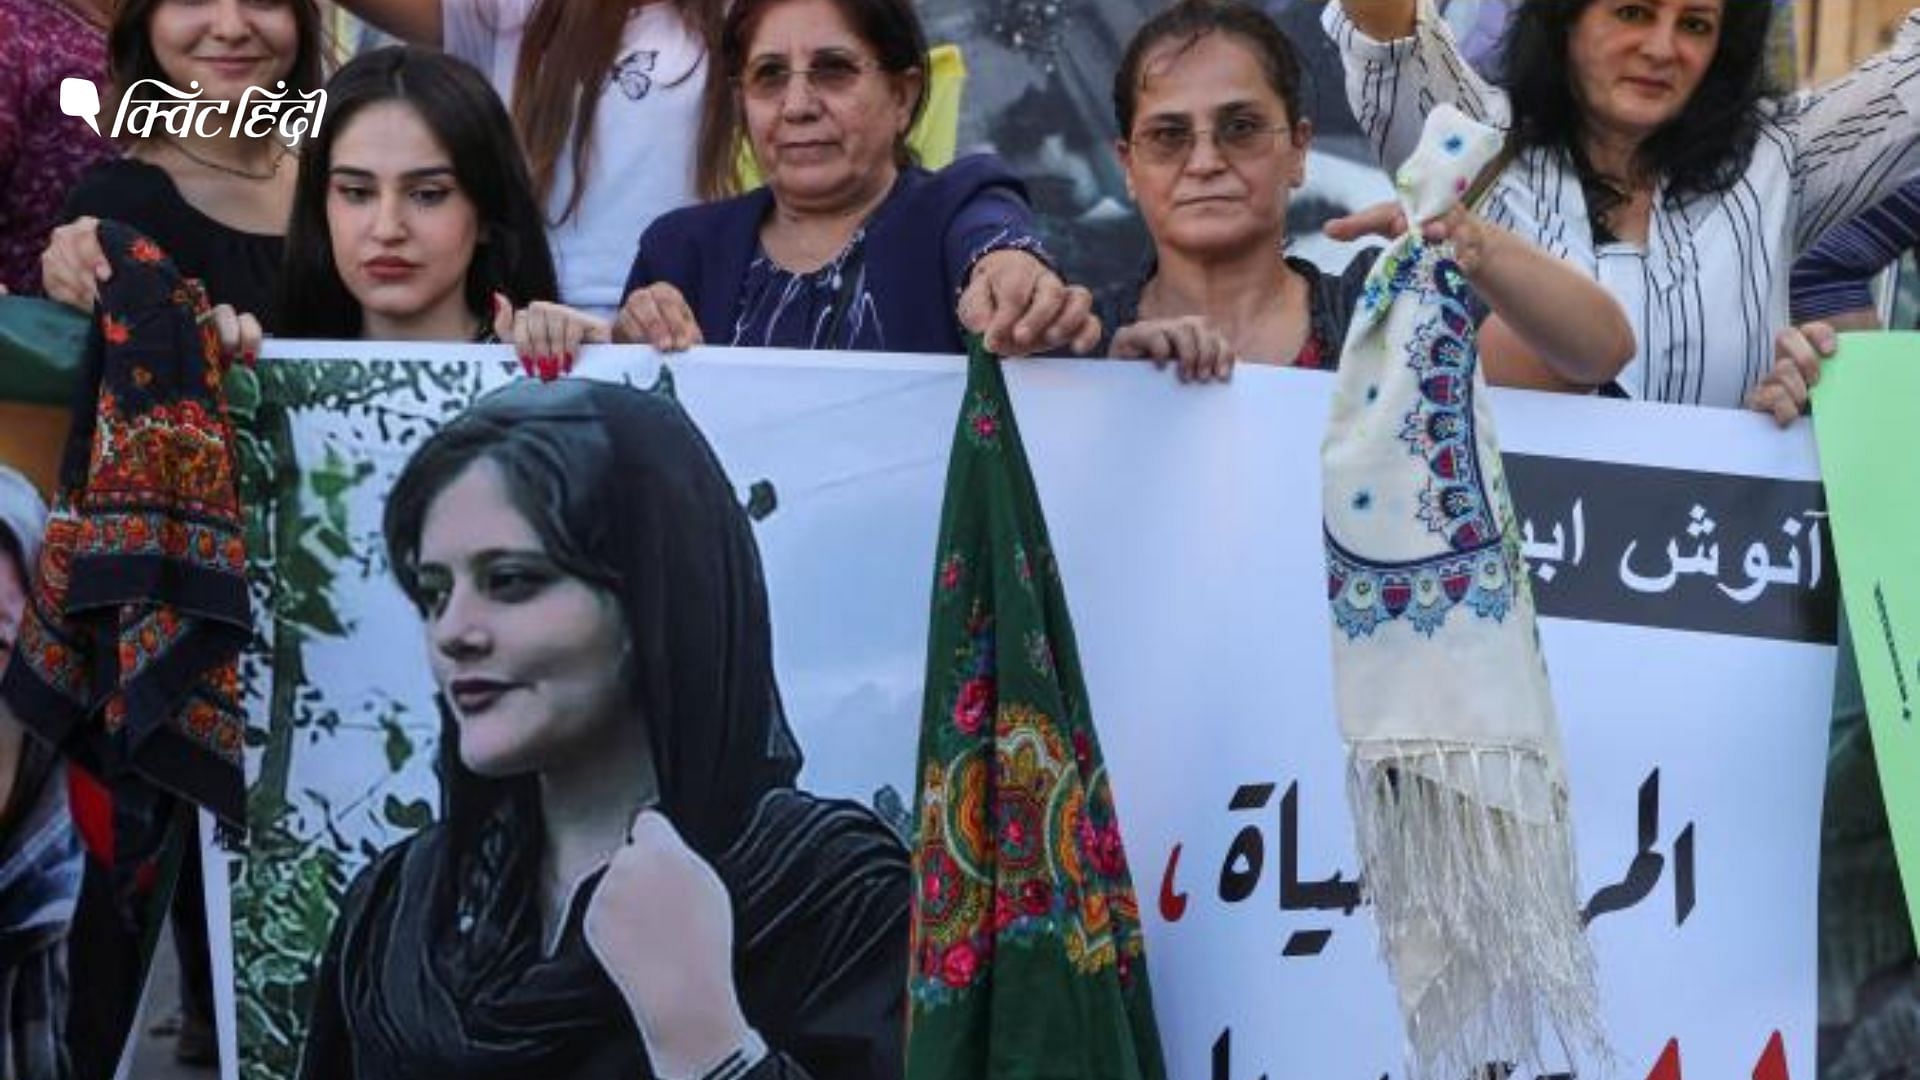 <div class="paragraphs"><p>ईरान में महिलाओं को टाइट कपड़े पहनने पर होगी 10 साल जेल, संसद में कानून पास</p></div>